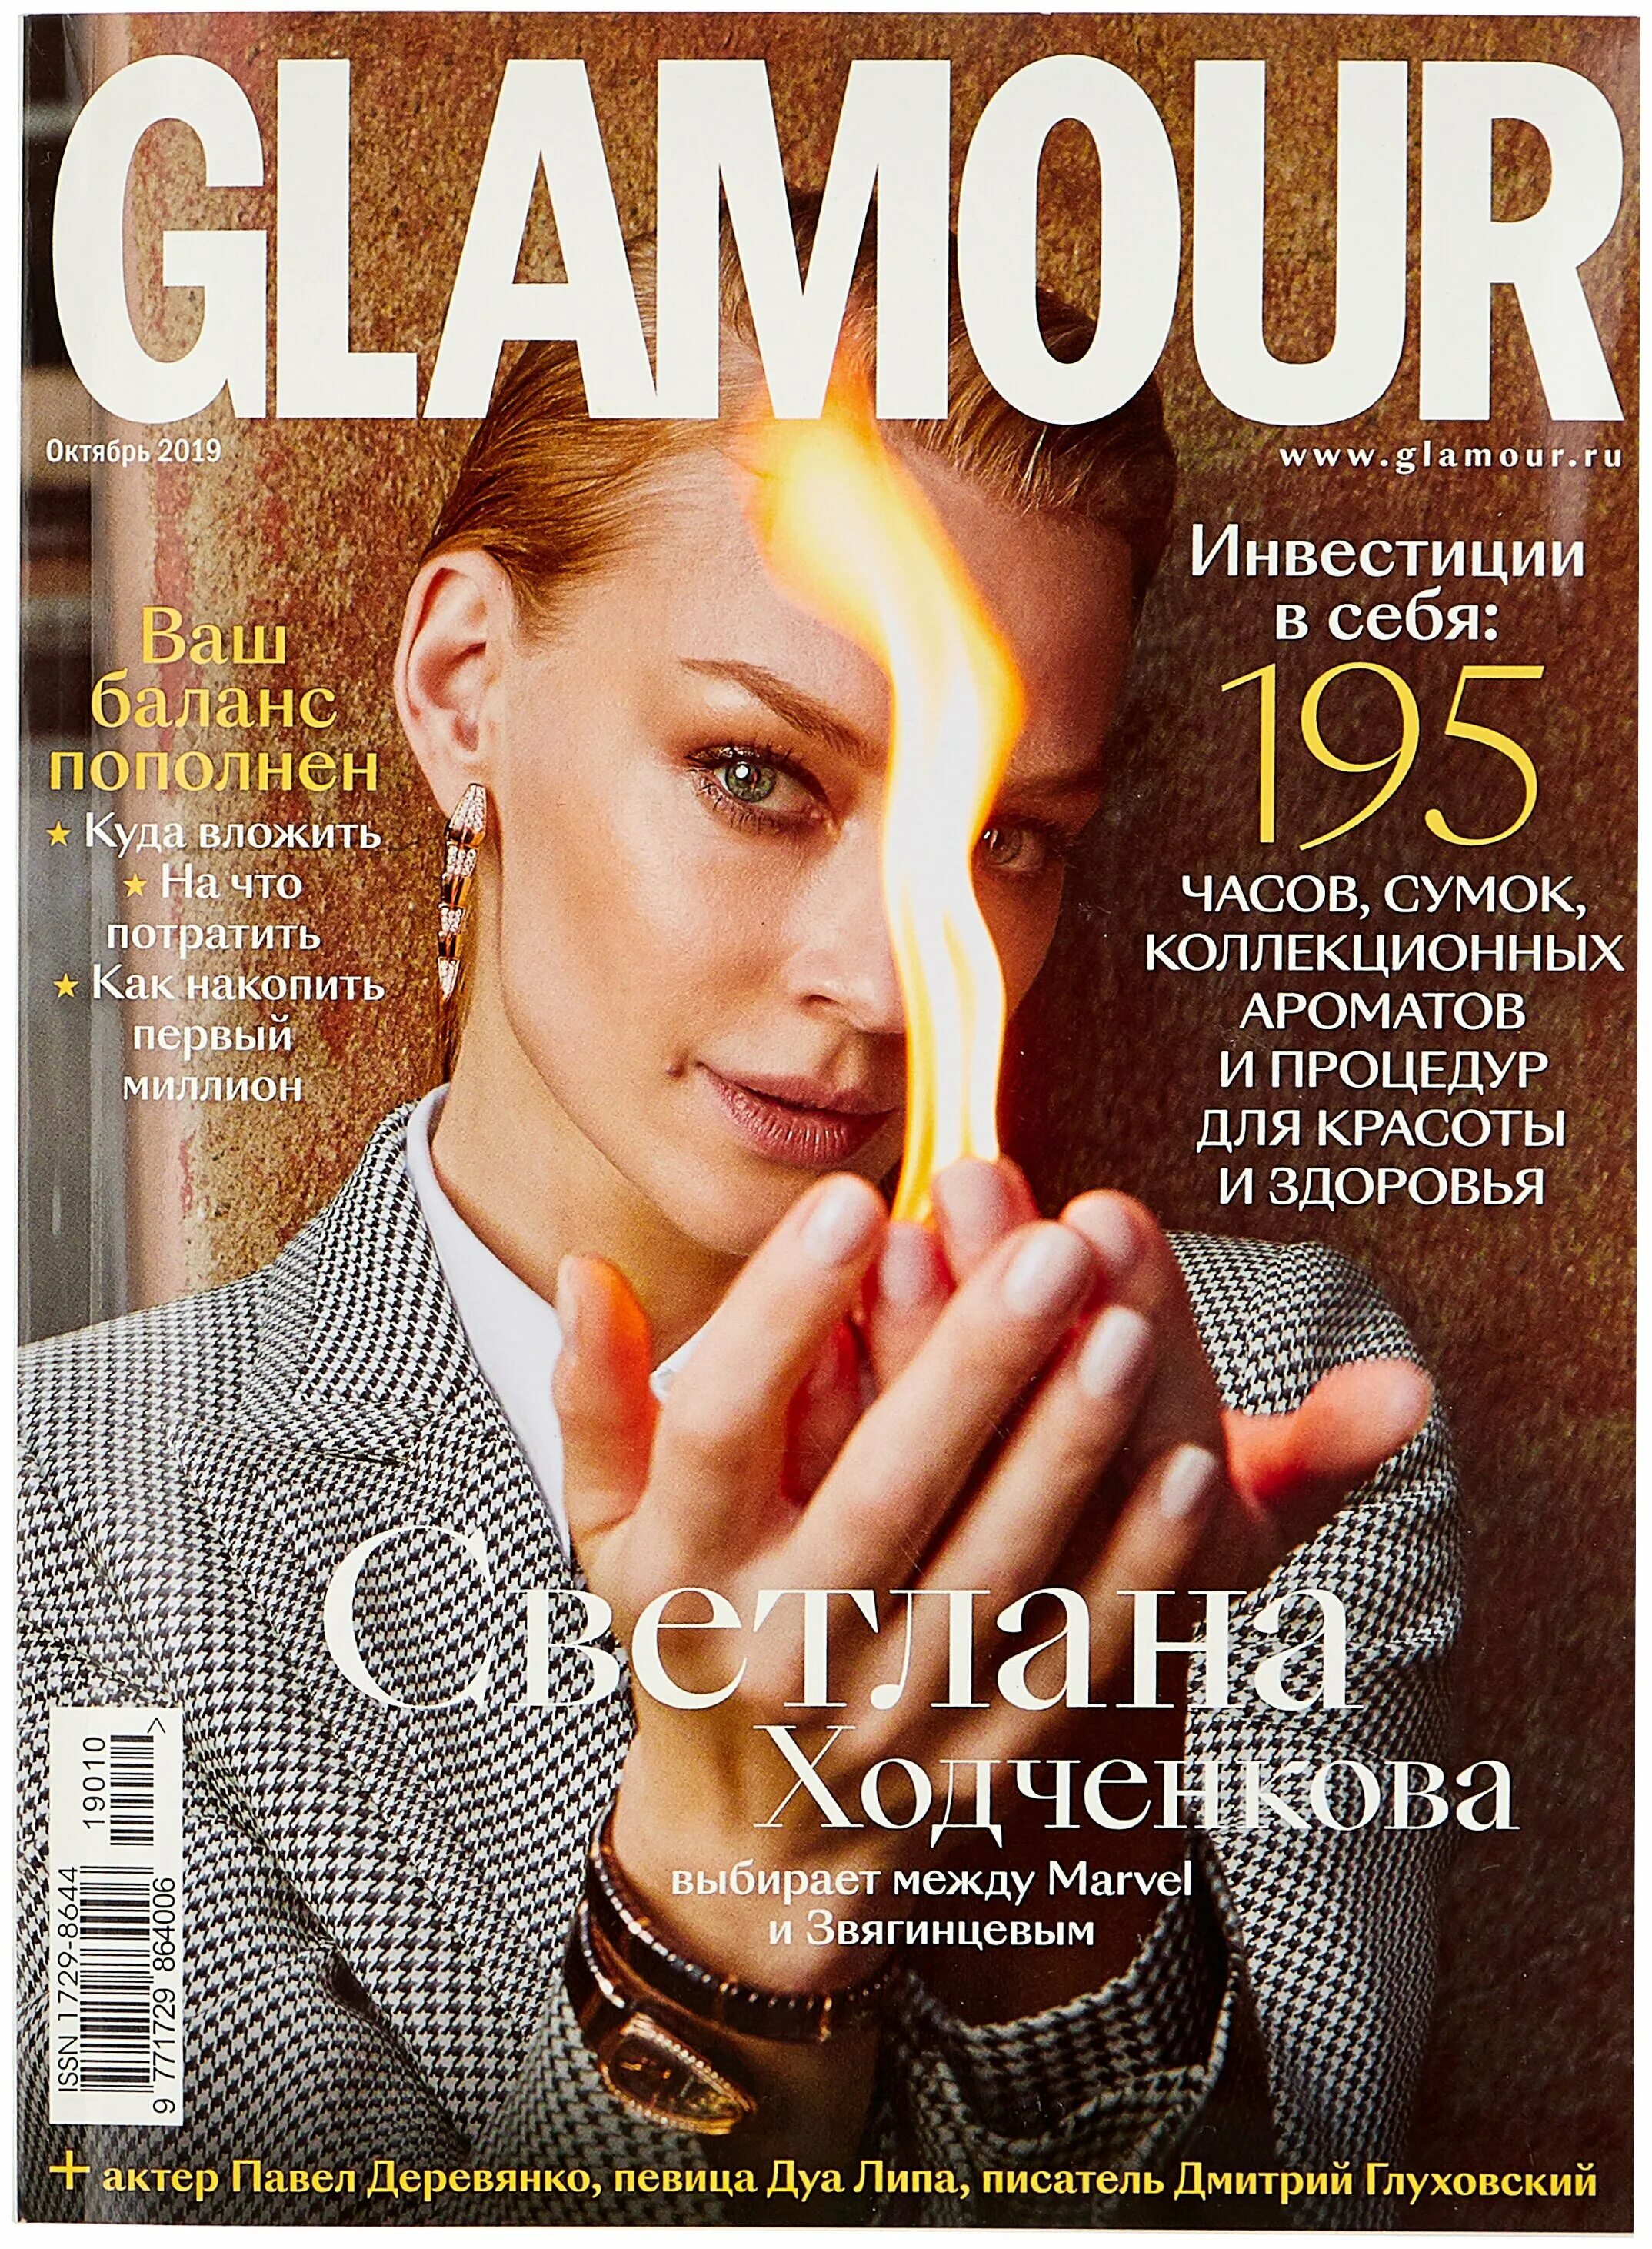 Glamour журнал. Гламур журнал октябрь 2019. Гламурные журналы. Журнал Glamour. Обложка журнала красоты.